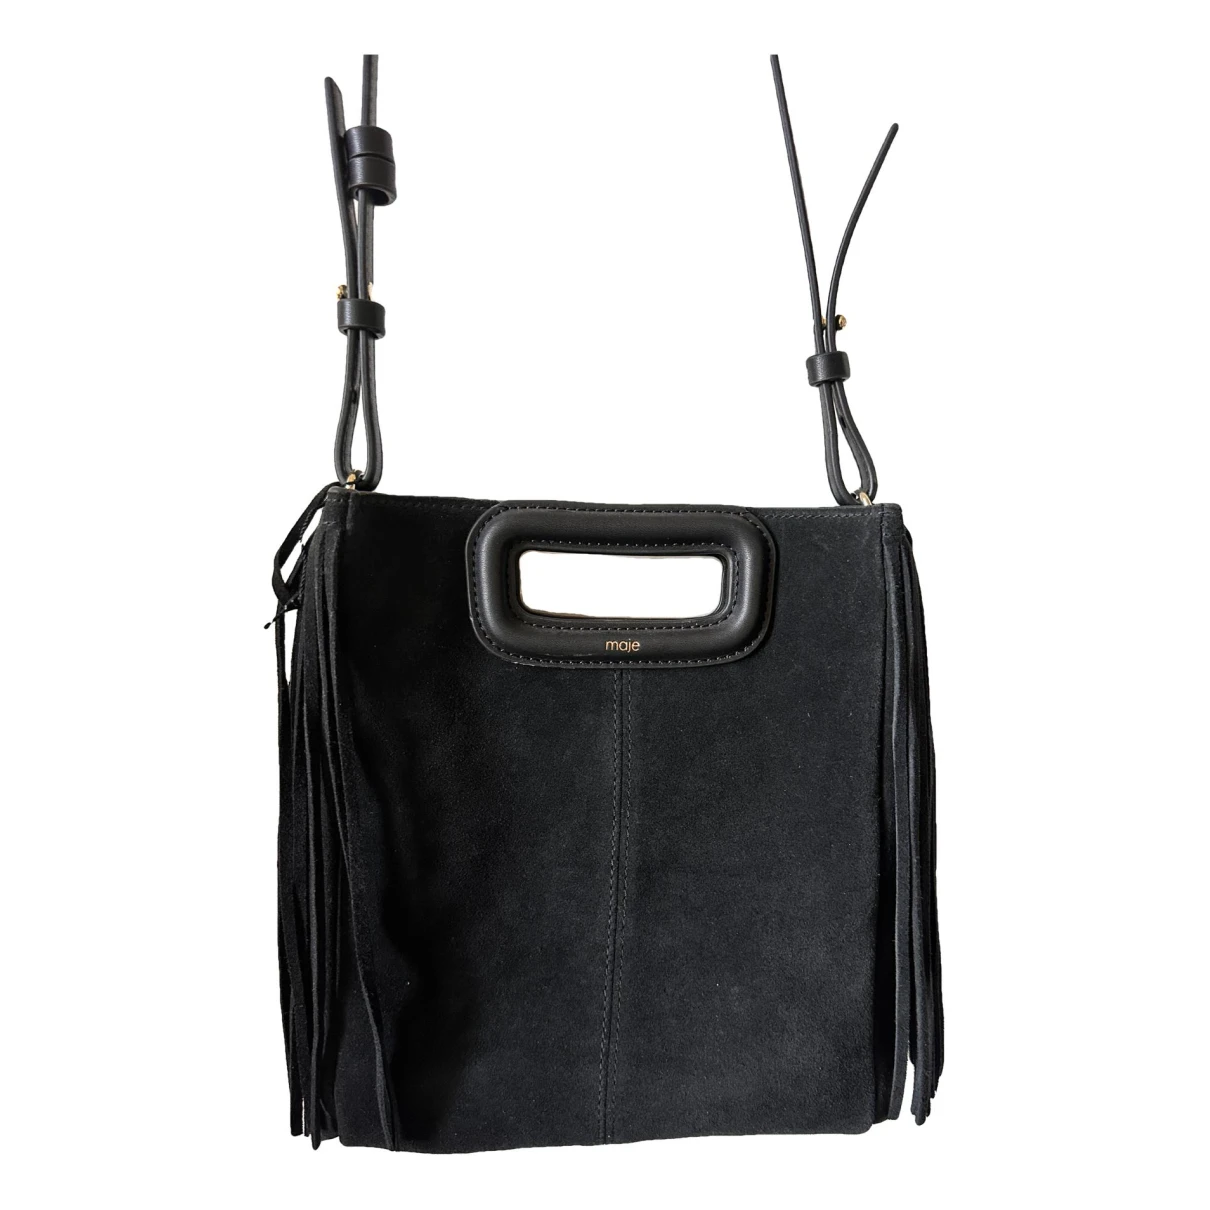 Pre-owned Maje Sac M Handbag In Black